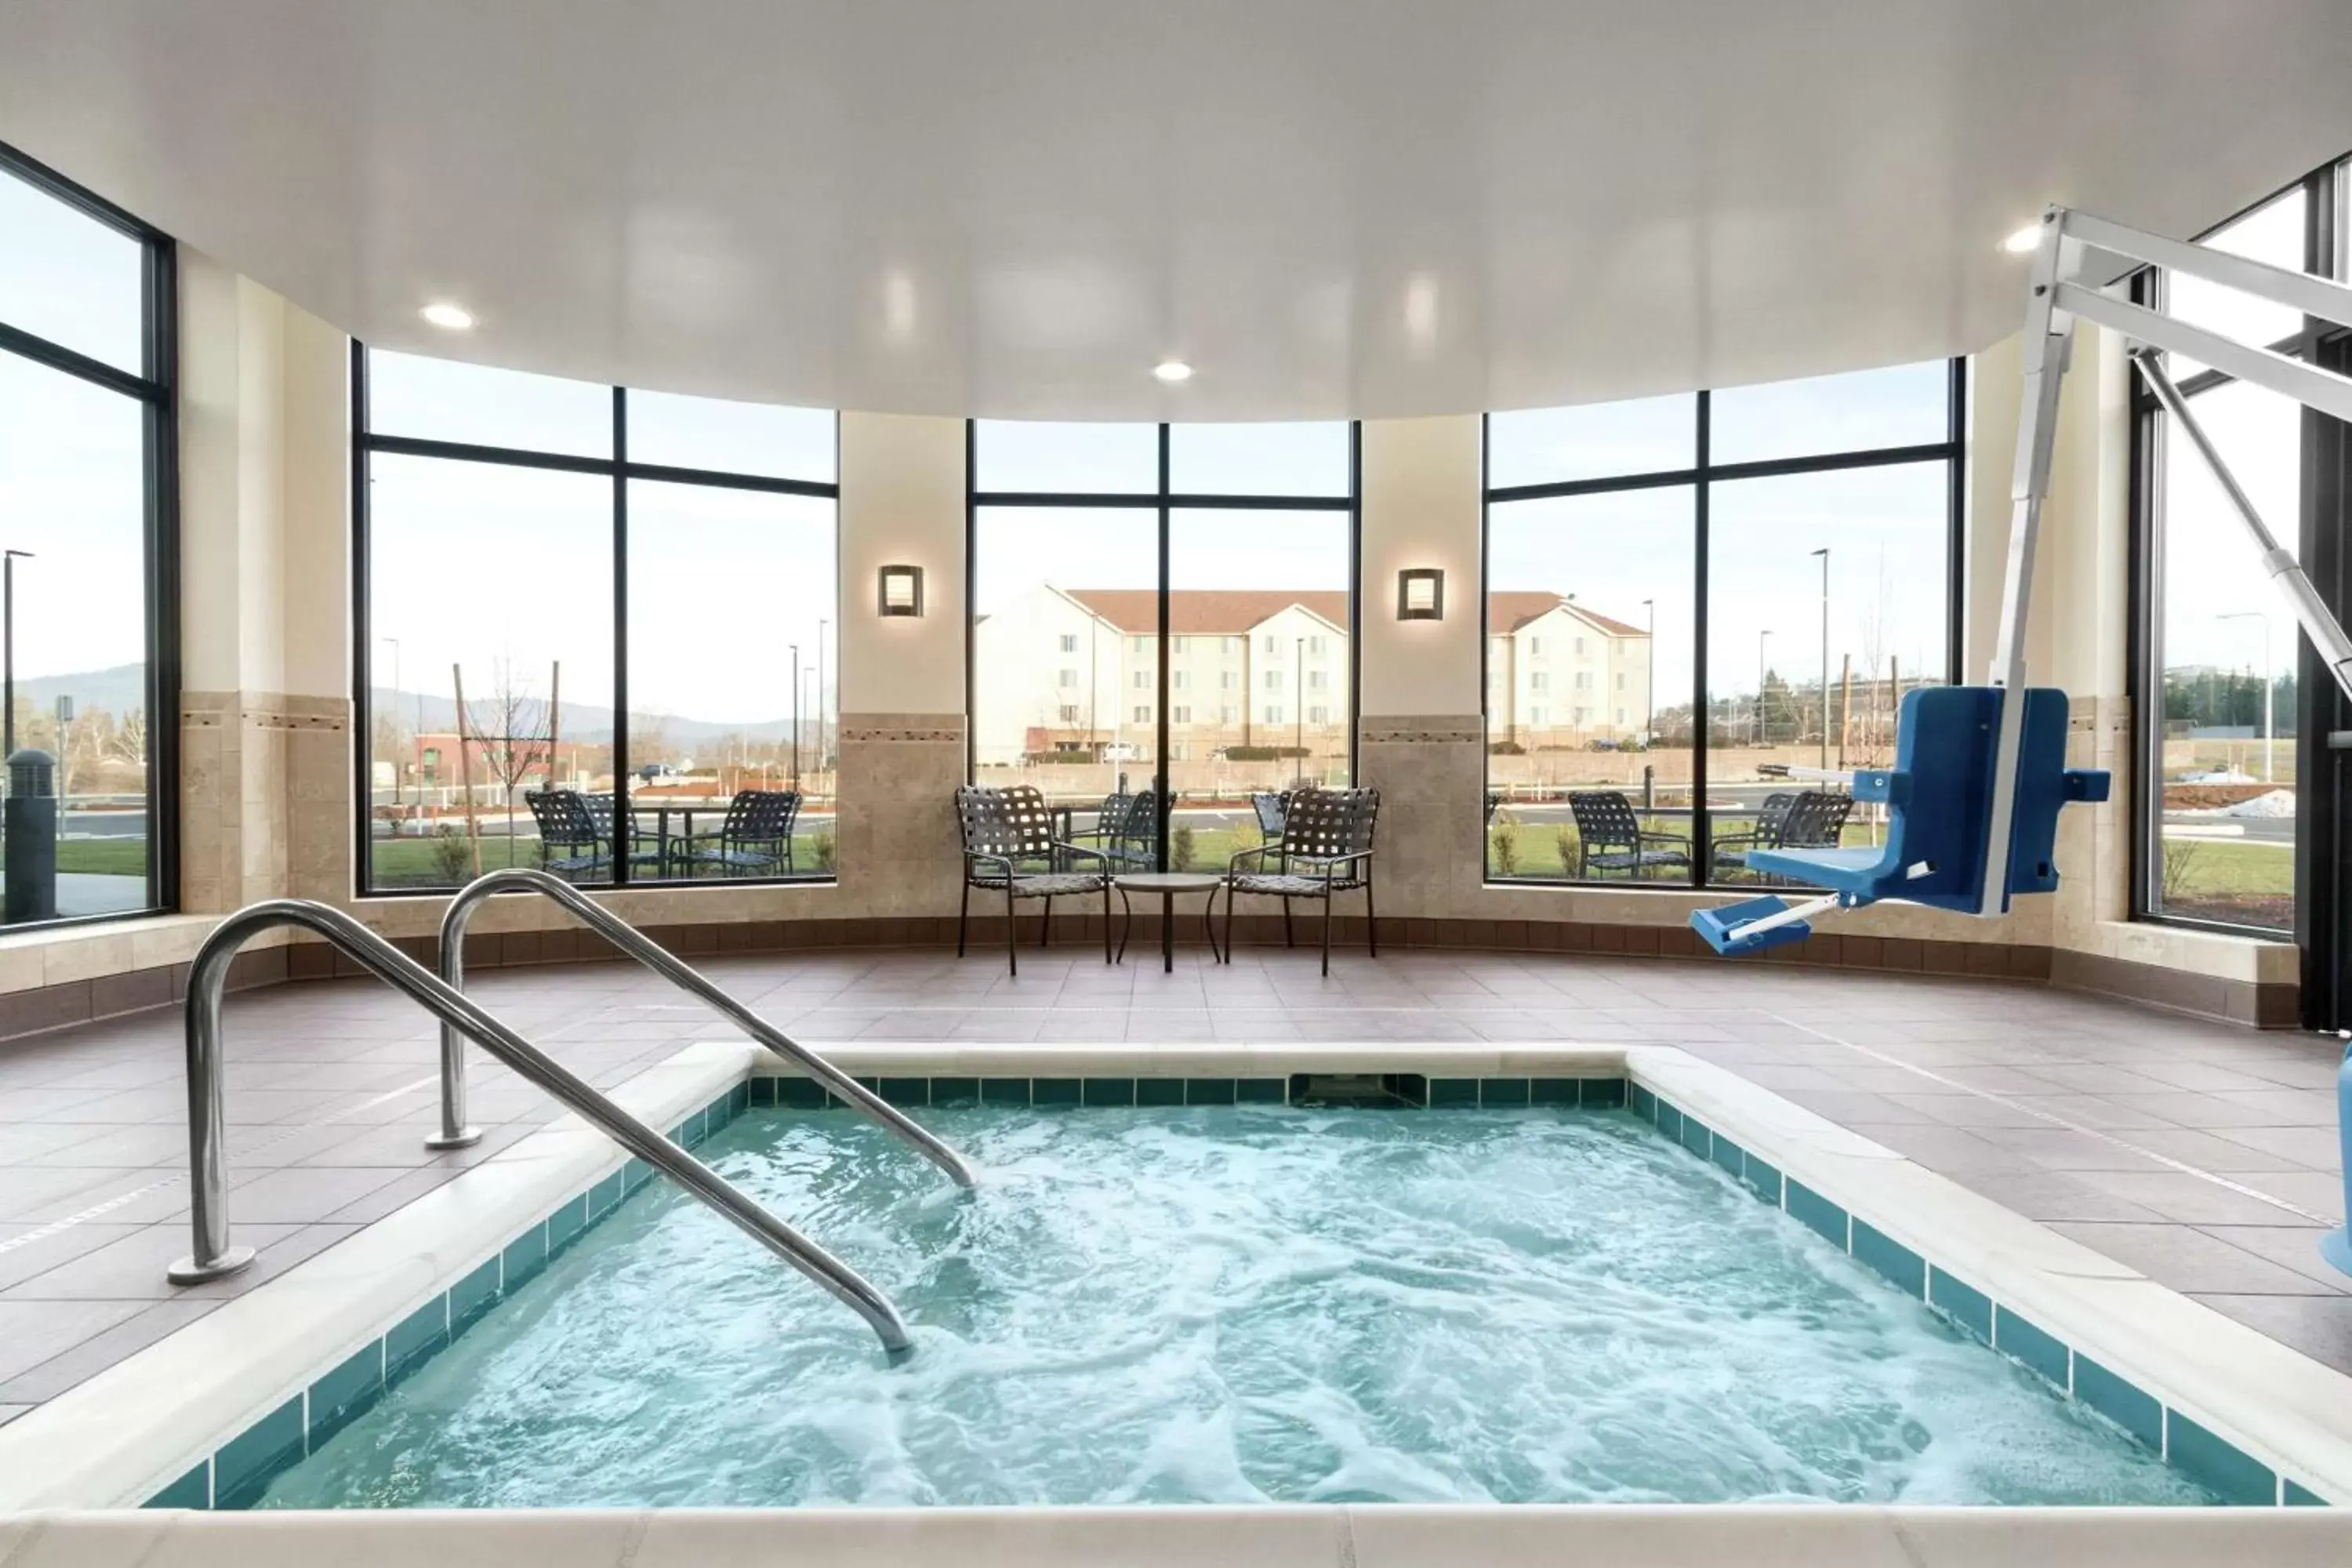 Hot Tub, Swimming Pool in Hilton Garden Inn Medford